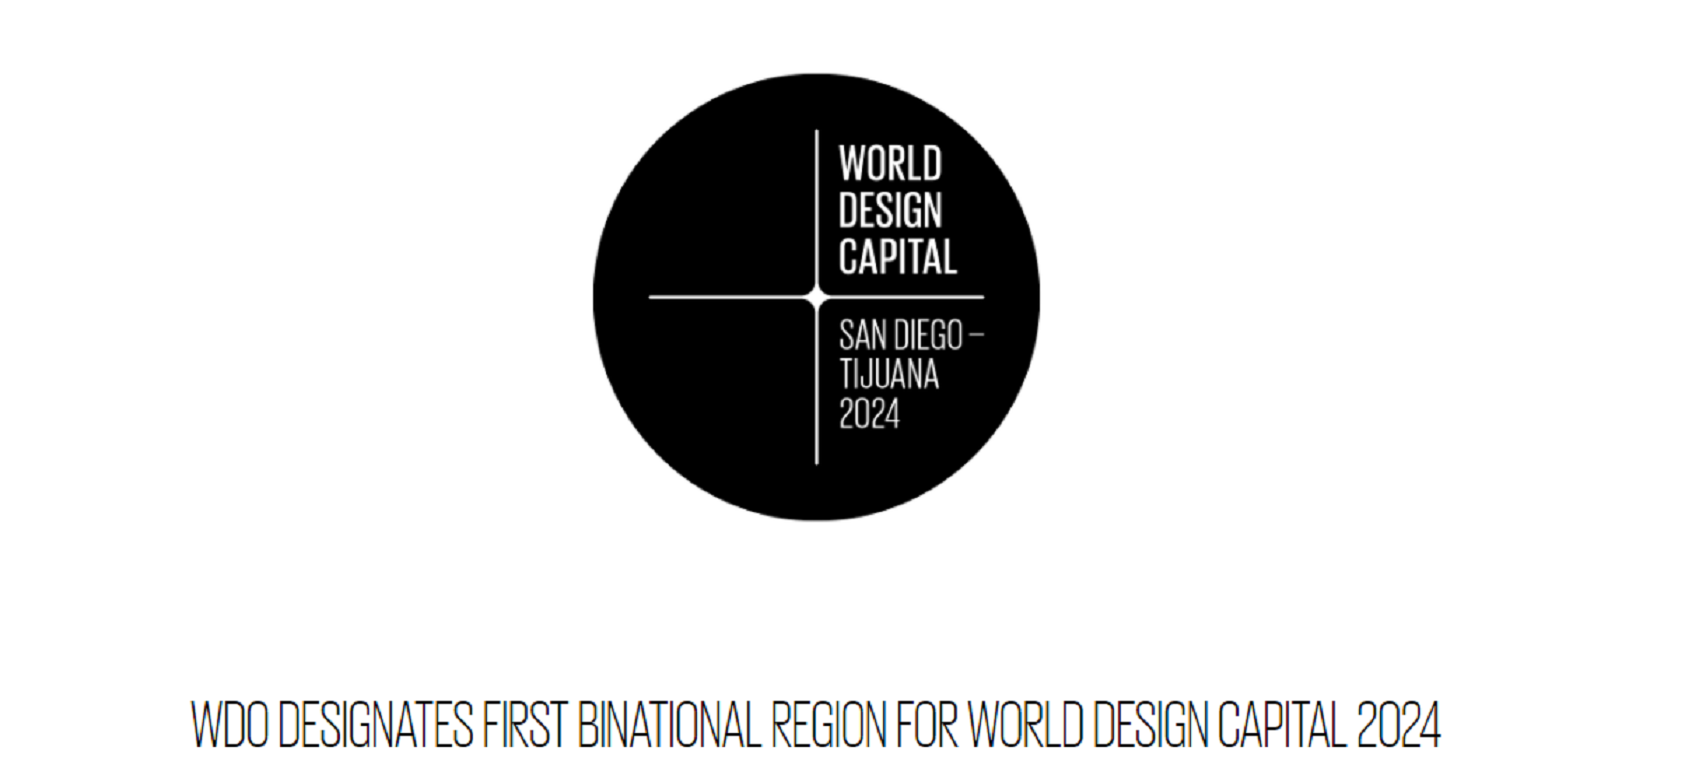 Las ciudades de San Diego y Tijuana han sido nombradas conjuntamente World Design Capital 2024